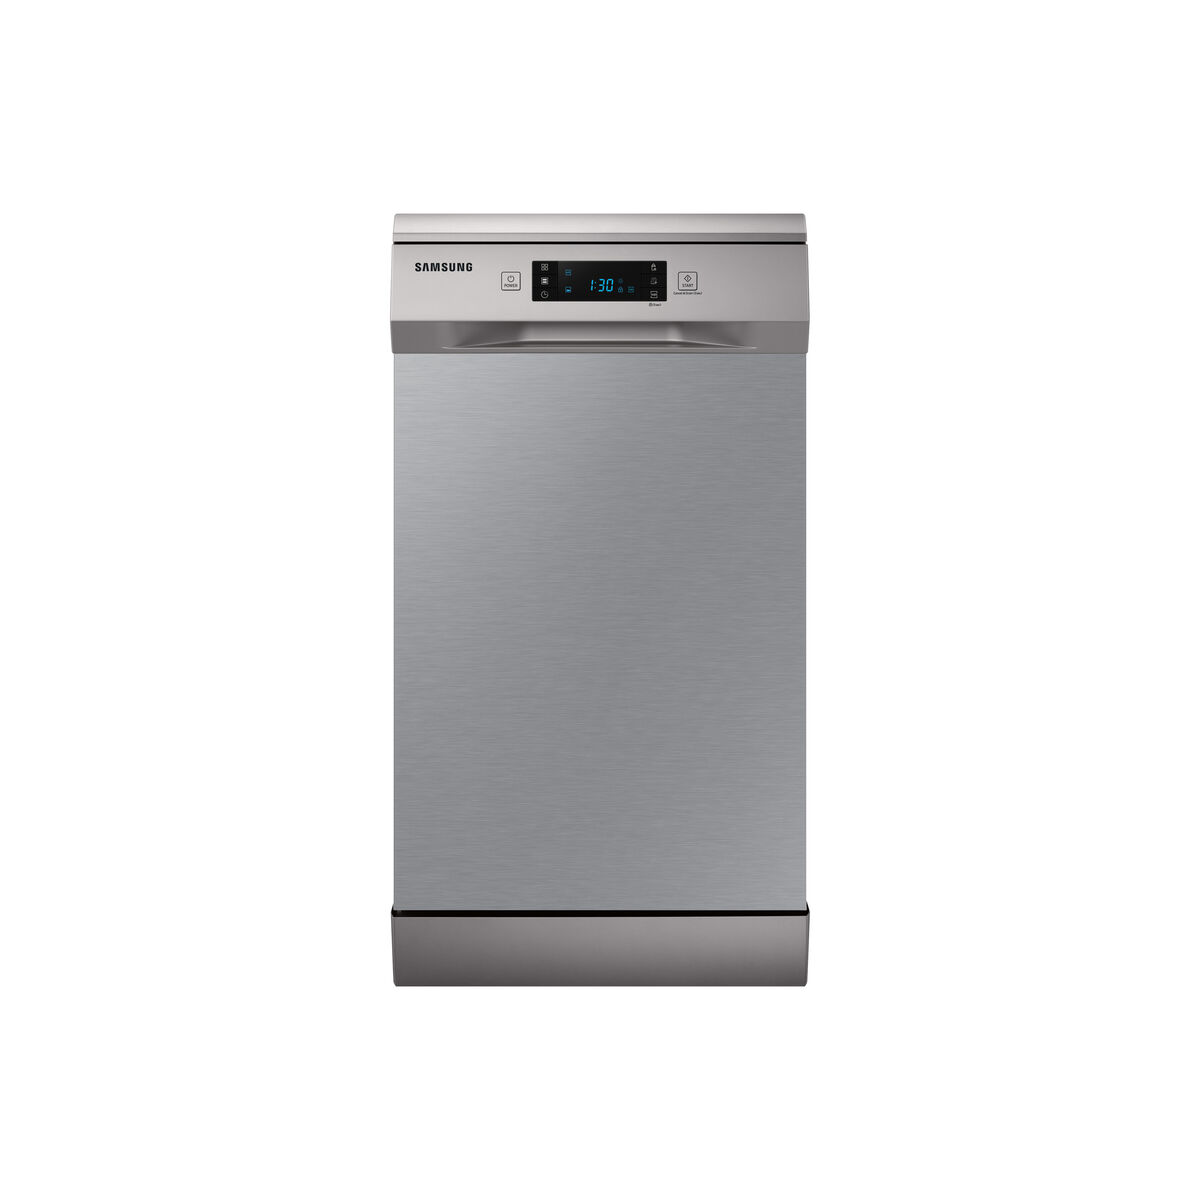 Dishwasher Samsung DW50R4070FS Stainless steel 45 cm